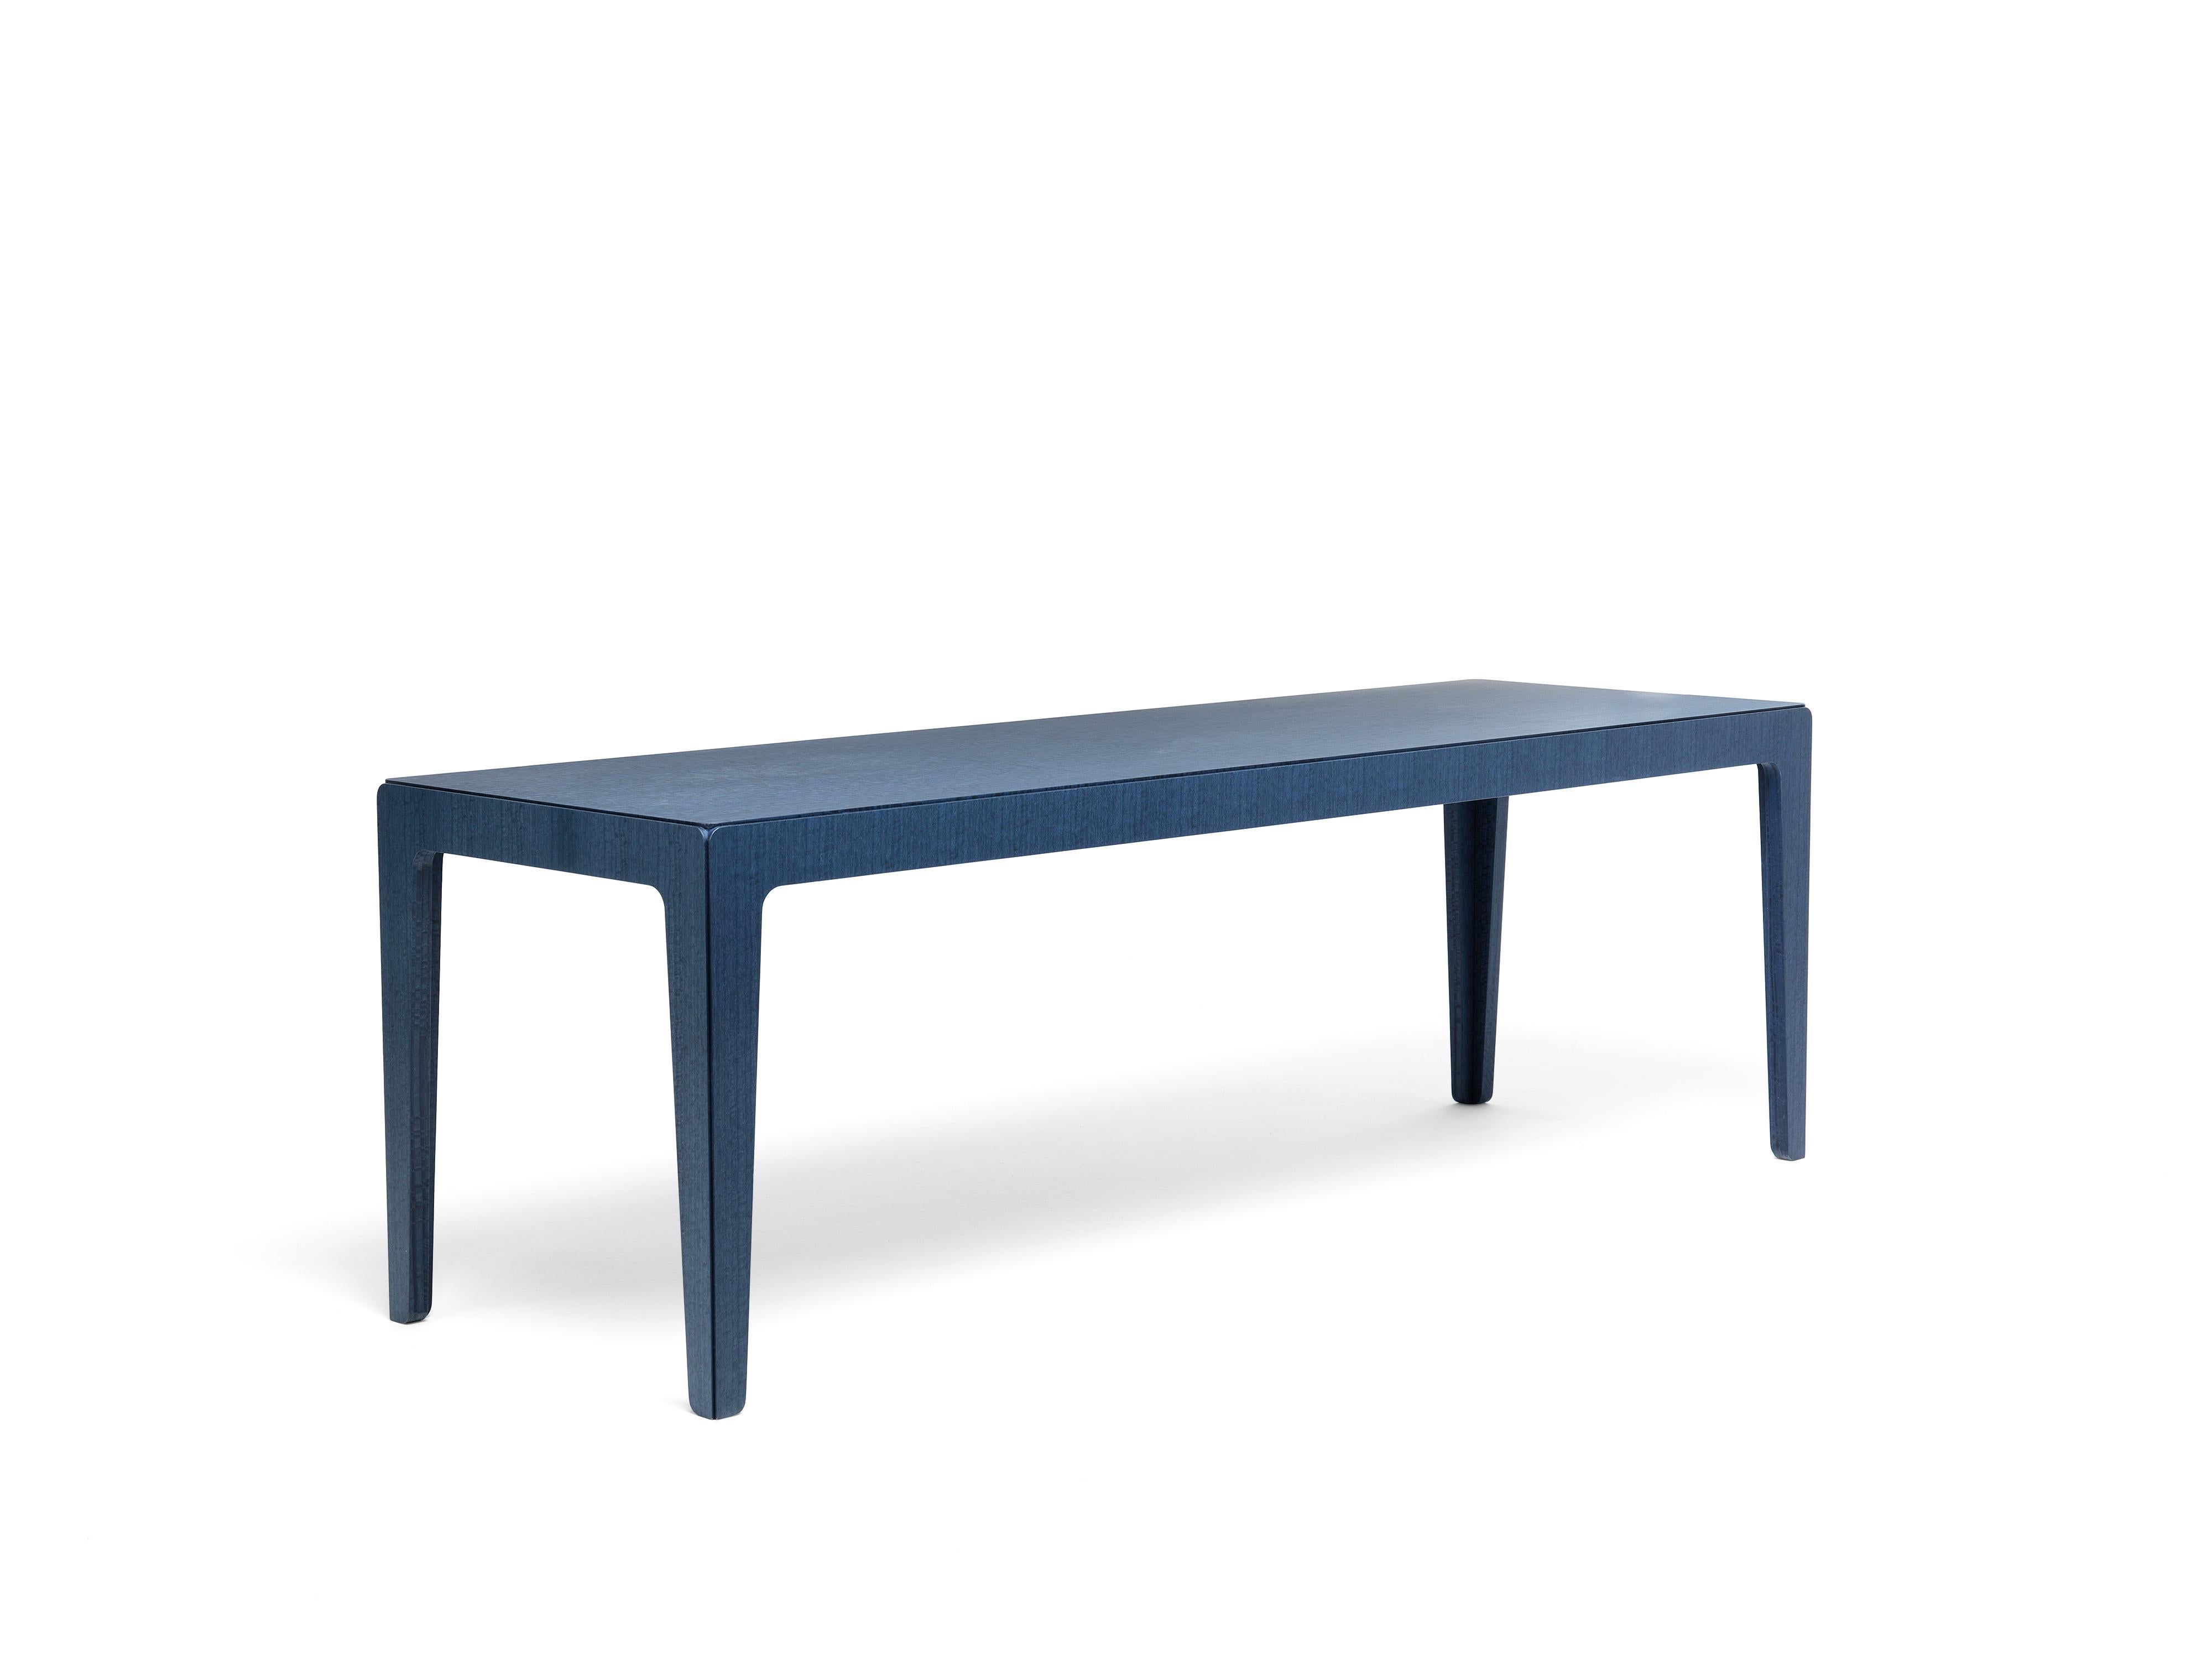 Une famille de tables à 4 pieds en MDF recouvert de placage d'eucalyptus teinté bleu. Grâce à une astuce simple, la table, qui est en fait l'assemblage de cinq pièces, semble sculptée dans un bloc solide. Les quatre éléments latéraux, une fois